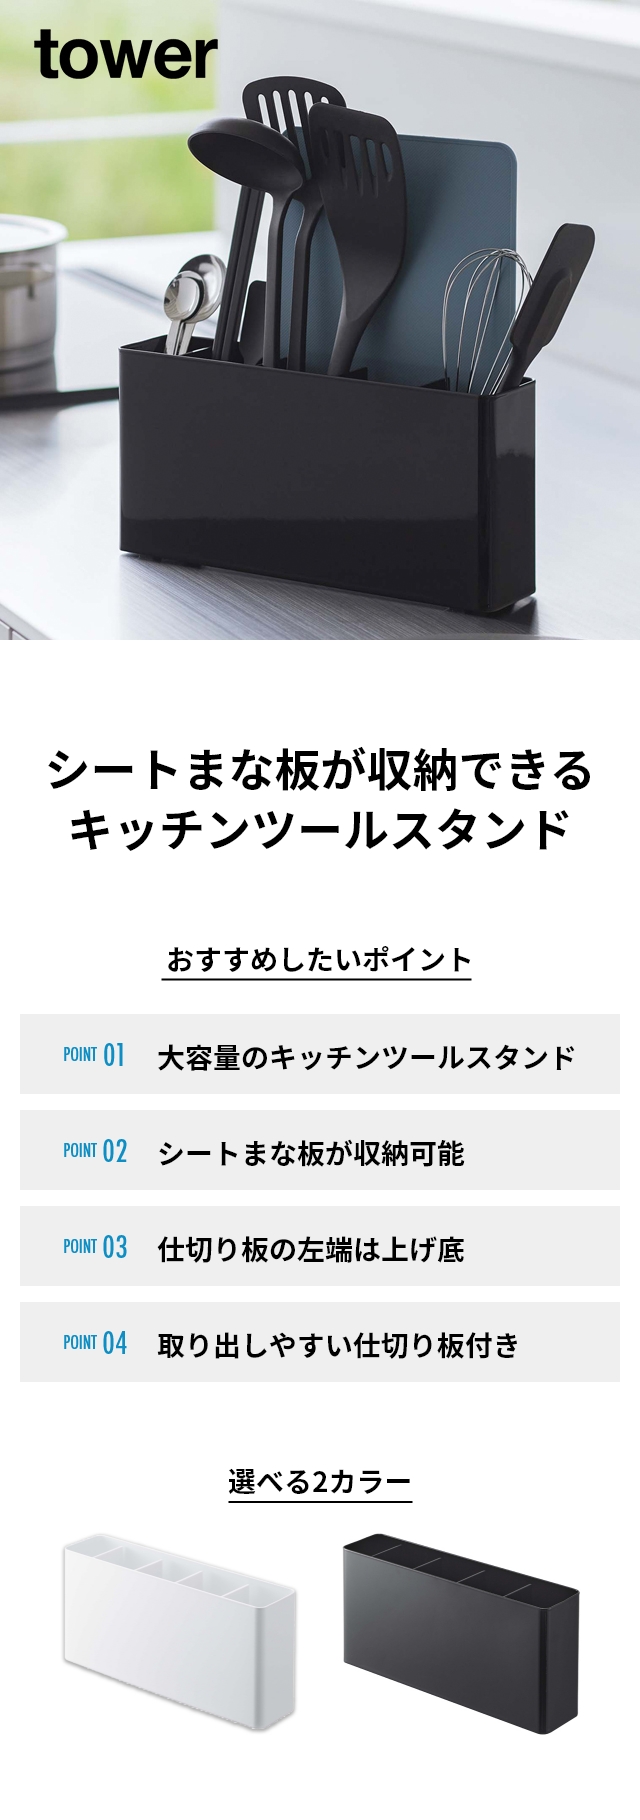 【色: ホワイト】山崎実業(Yamazaki) シートまな板が収納できる ツール